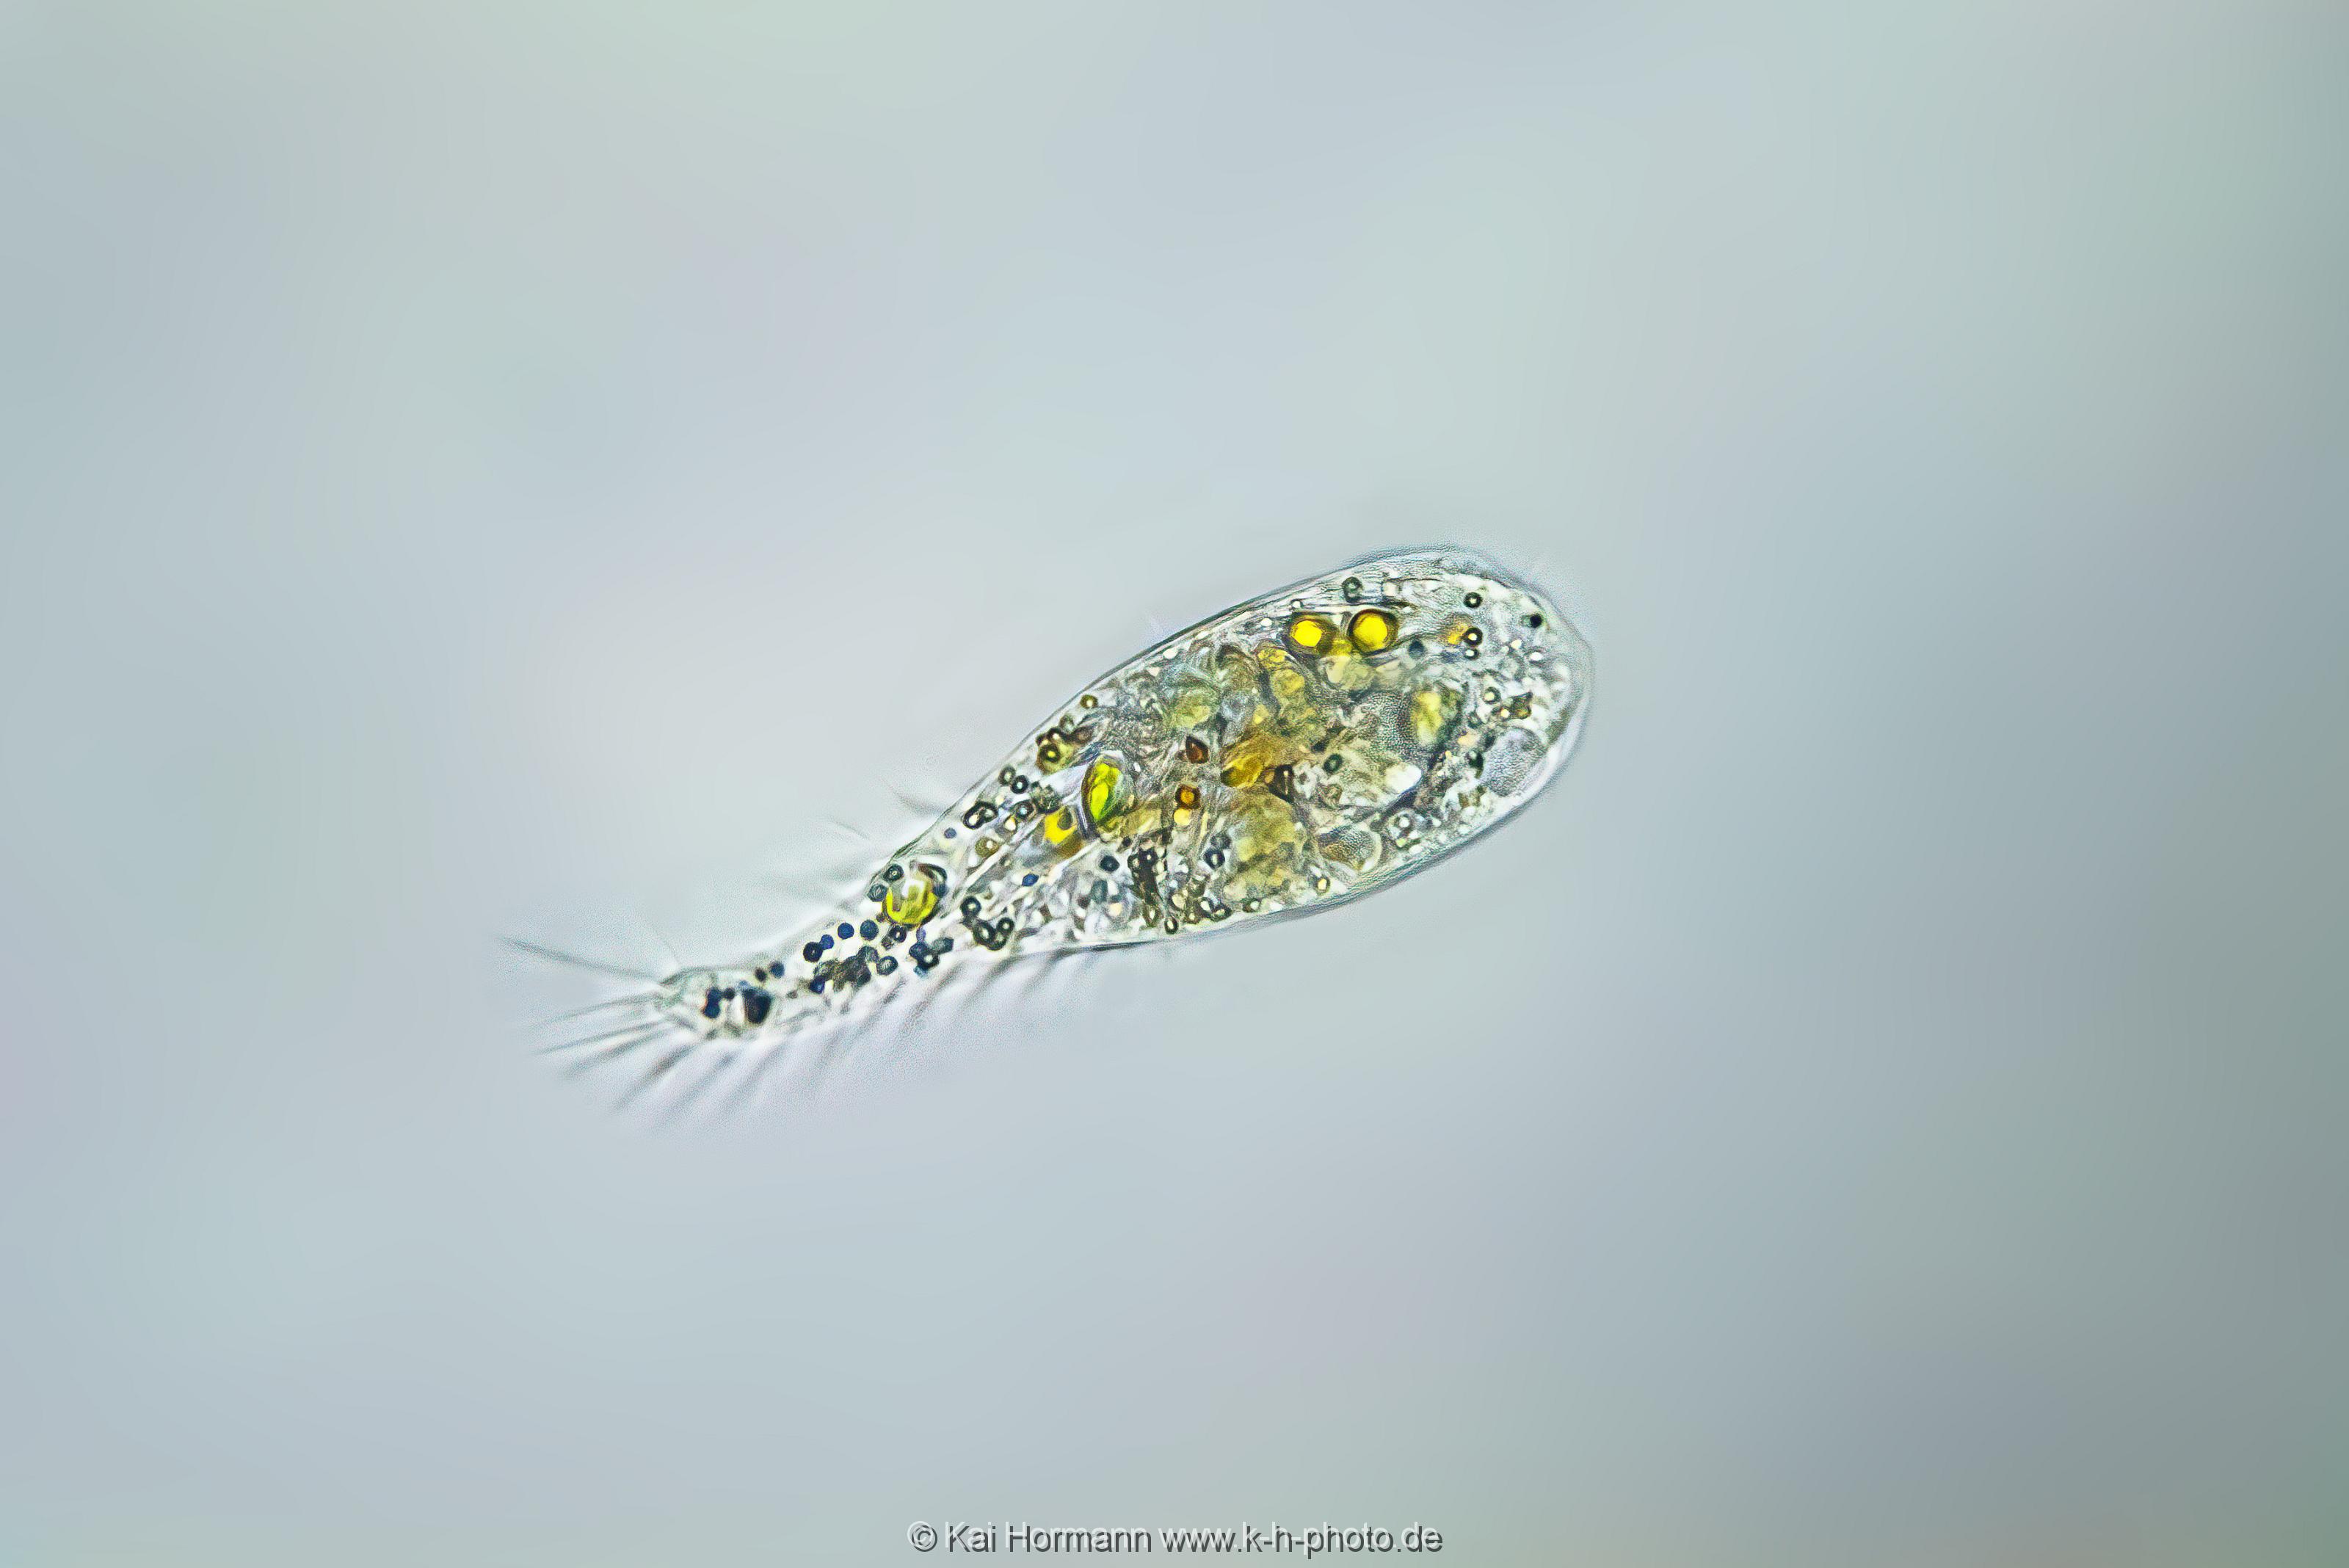 Wimpertier? (unbekannt) Mikrofotografie: Mikroskopische Aufnahmen von Einzellern, Algen und Kleinstlebewesen.